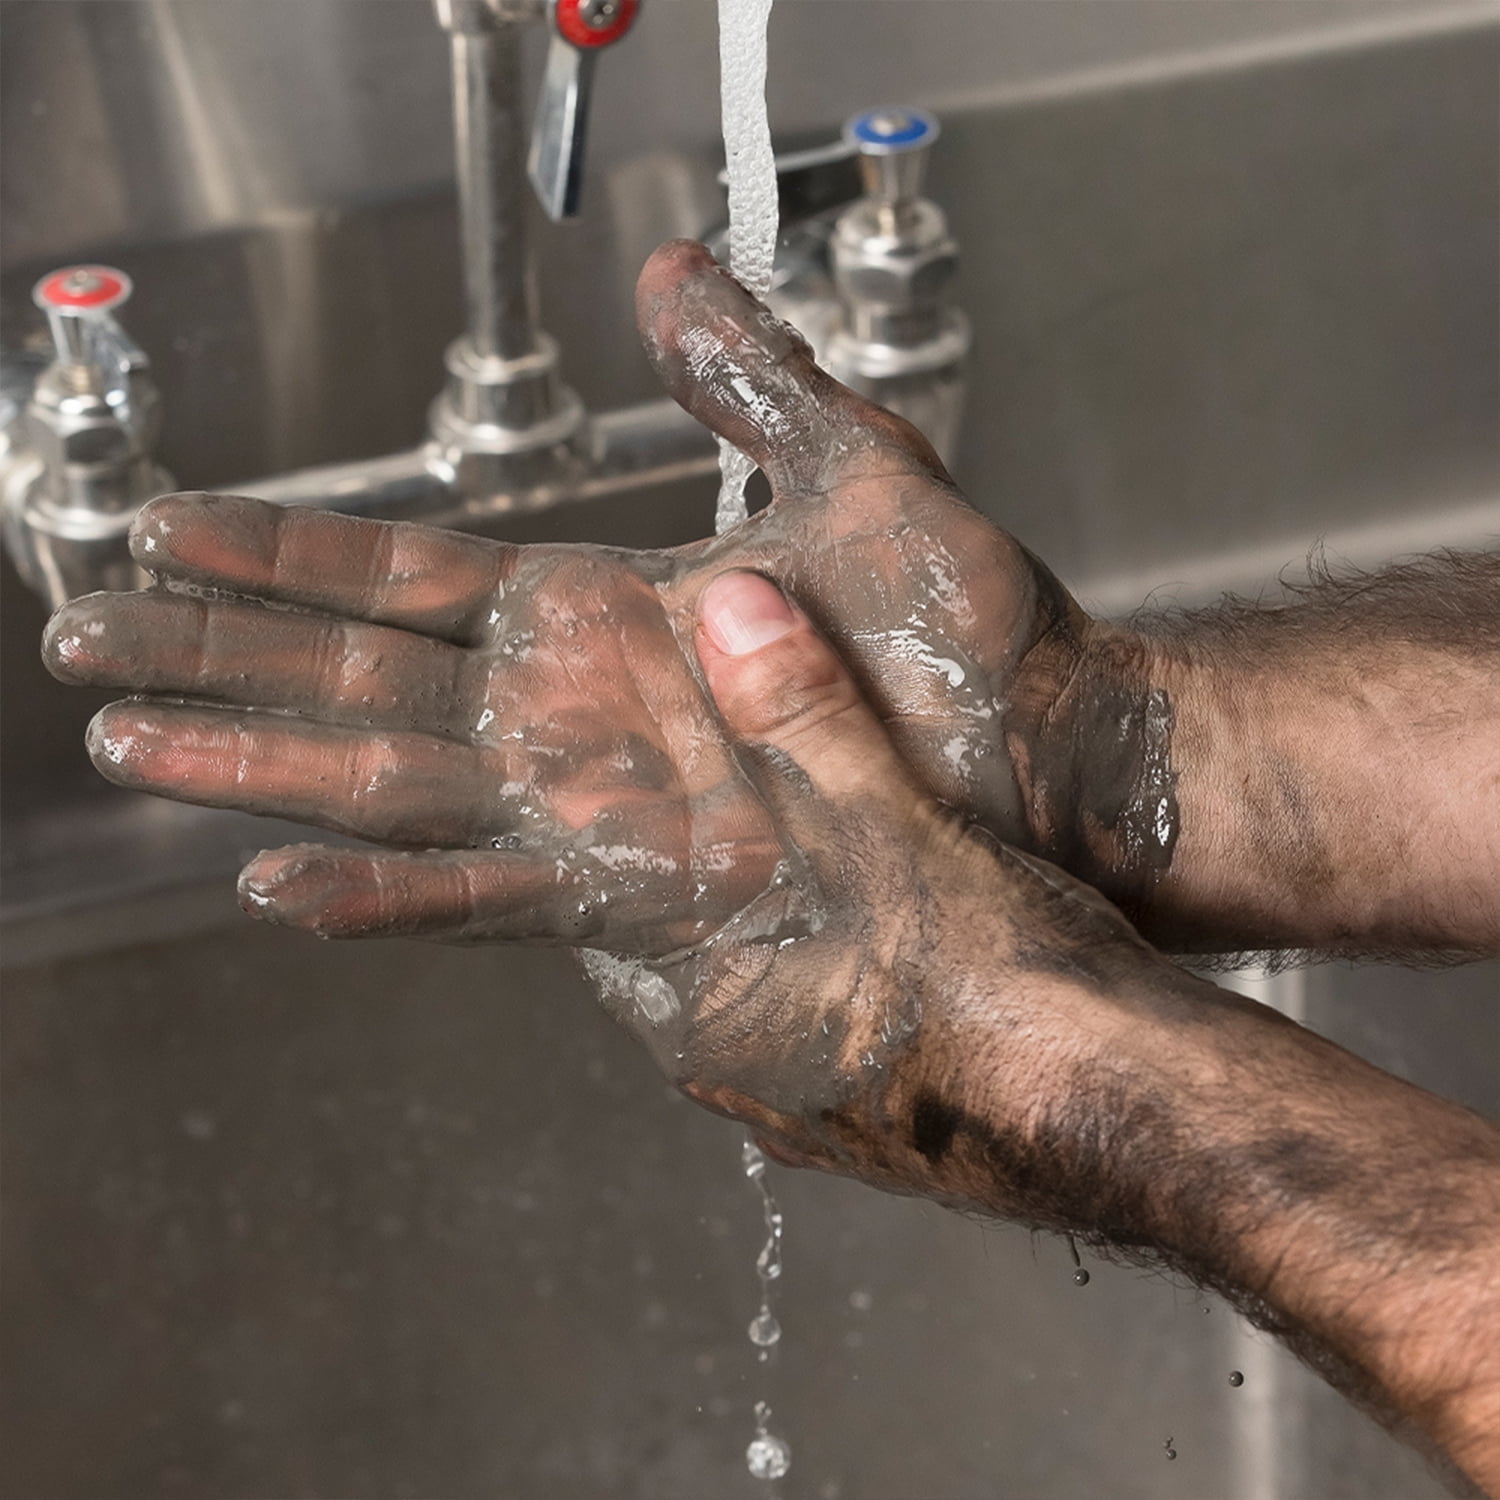 Grip Clean N128-4 Grip Clean All Natural Heavy-Duty Hand Soap